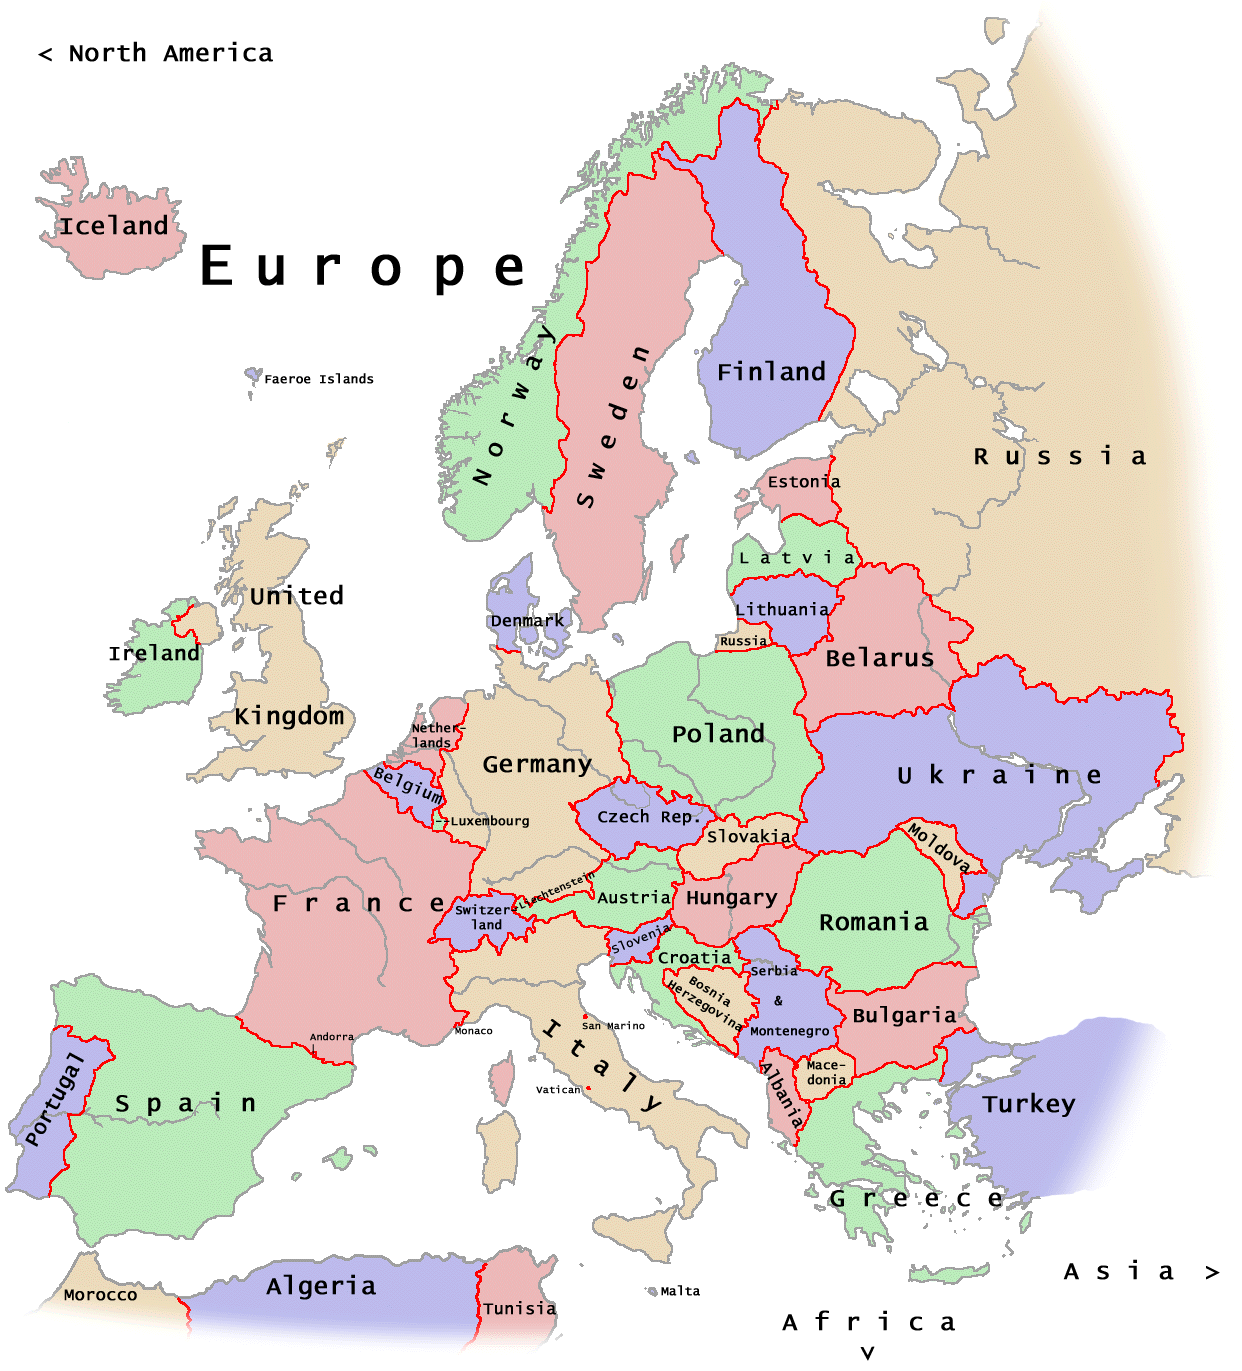 Juegos de Geografía | Juego de Europa - Político - Capitales